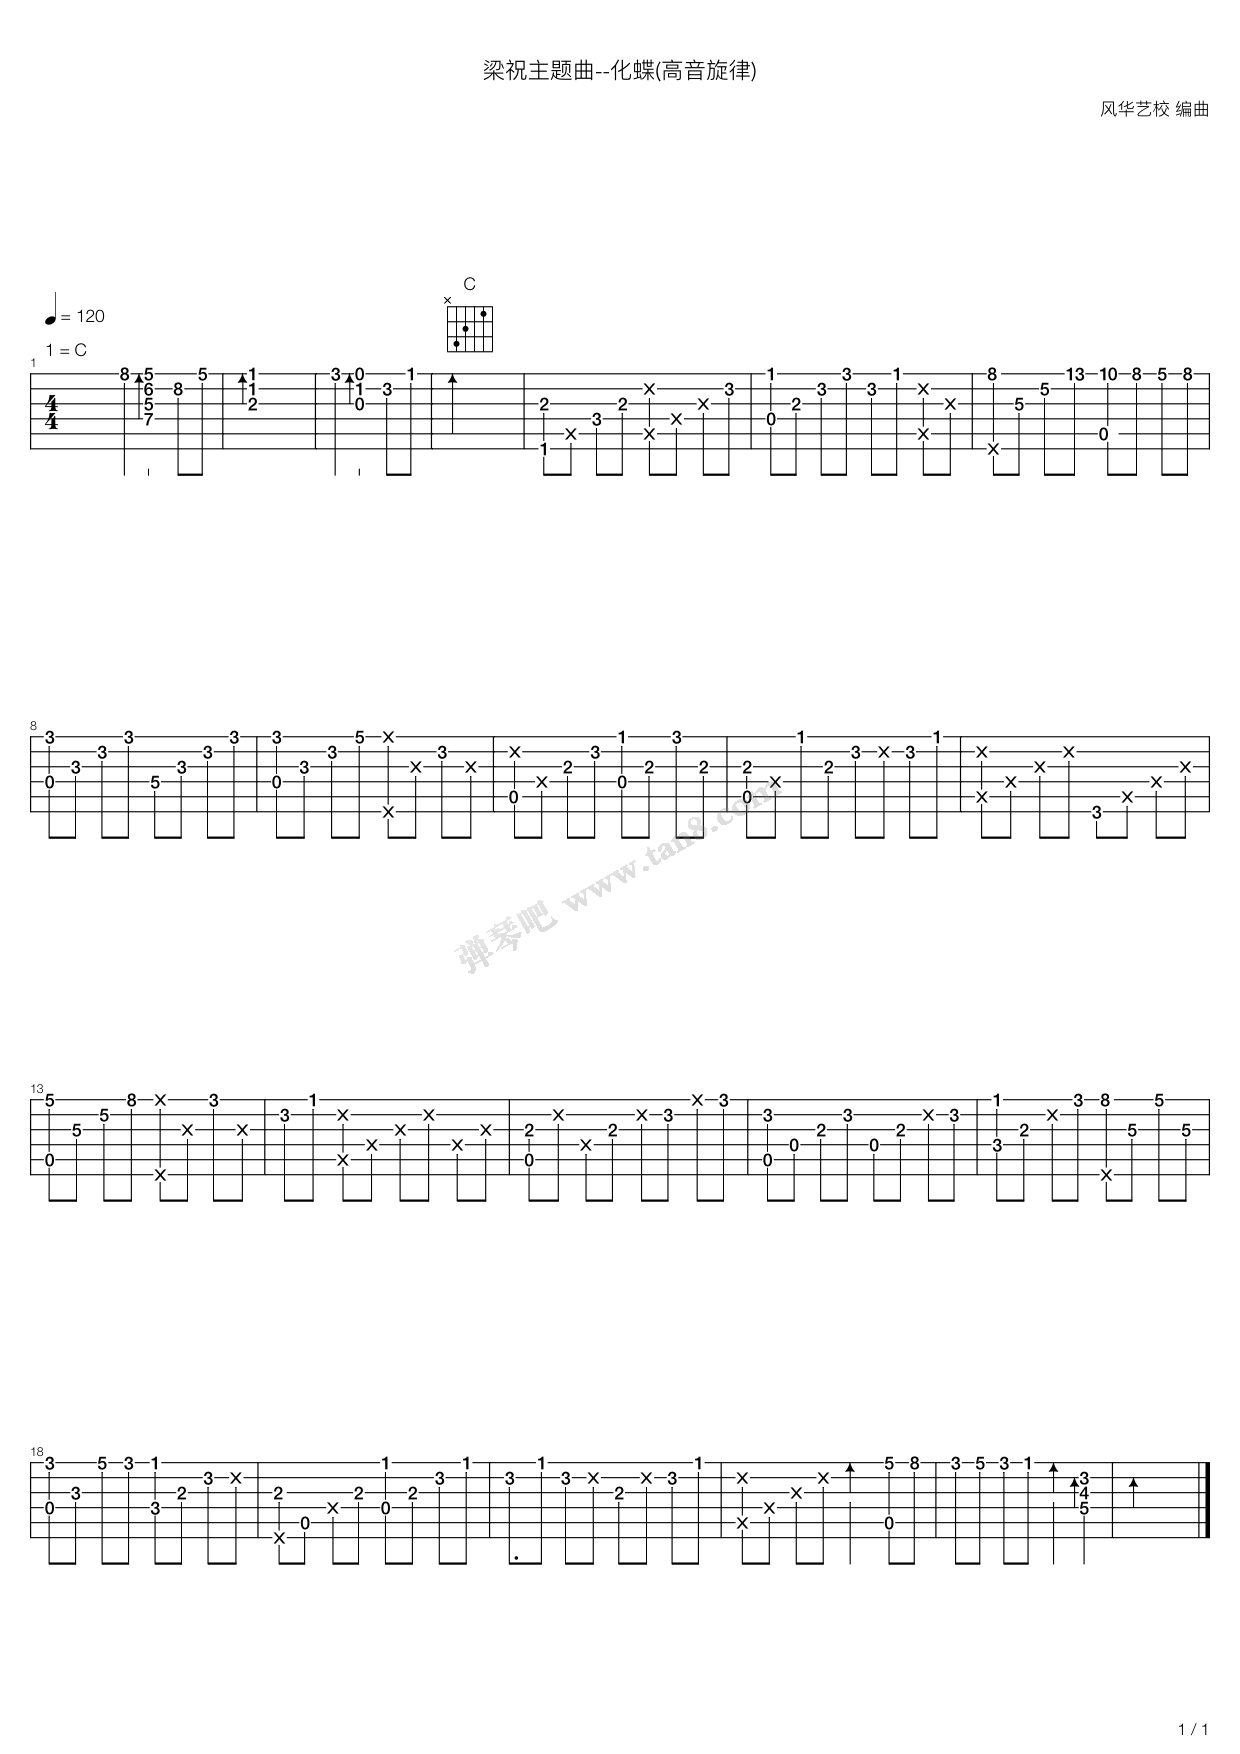 梁祝主题曲 - 化蝶(高音旋律)吉他谱 第1页